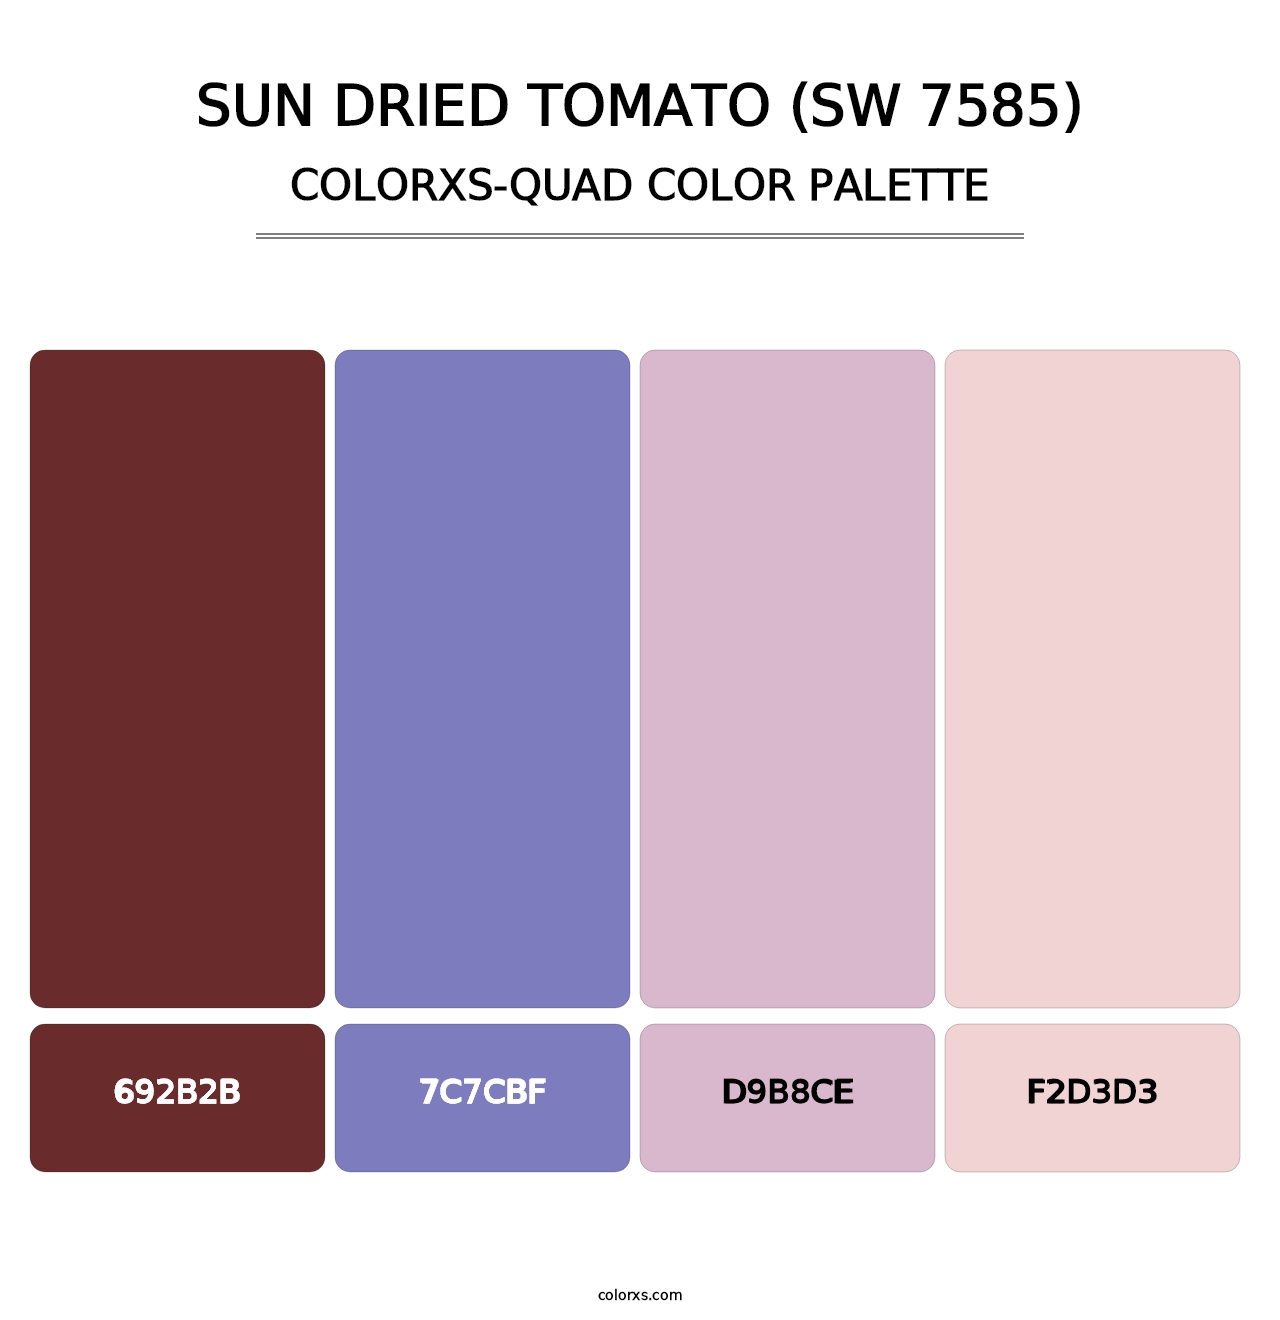 Sun Dried Tomato (SW 7585) - Colorxs Quad Palette